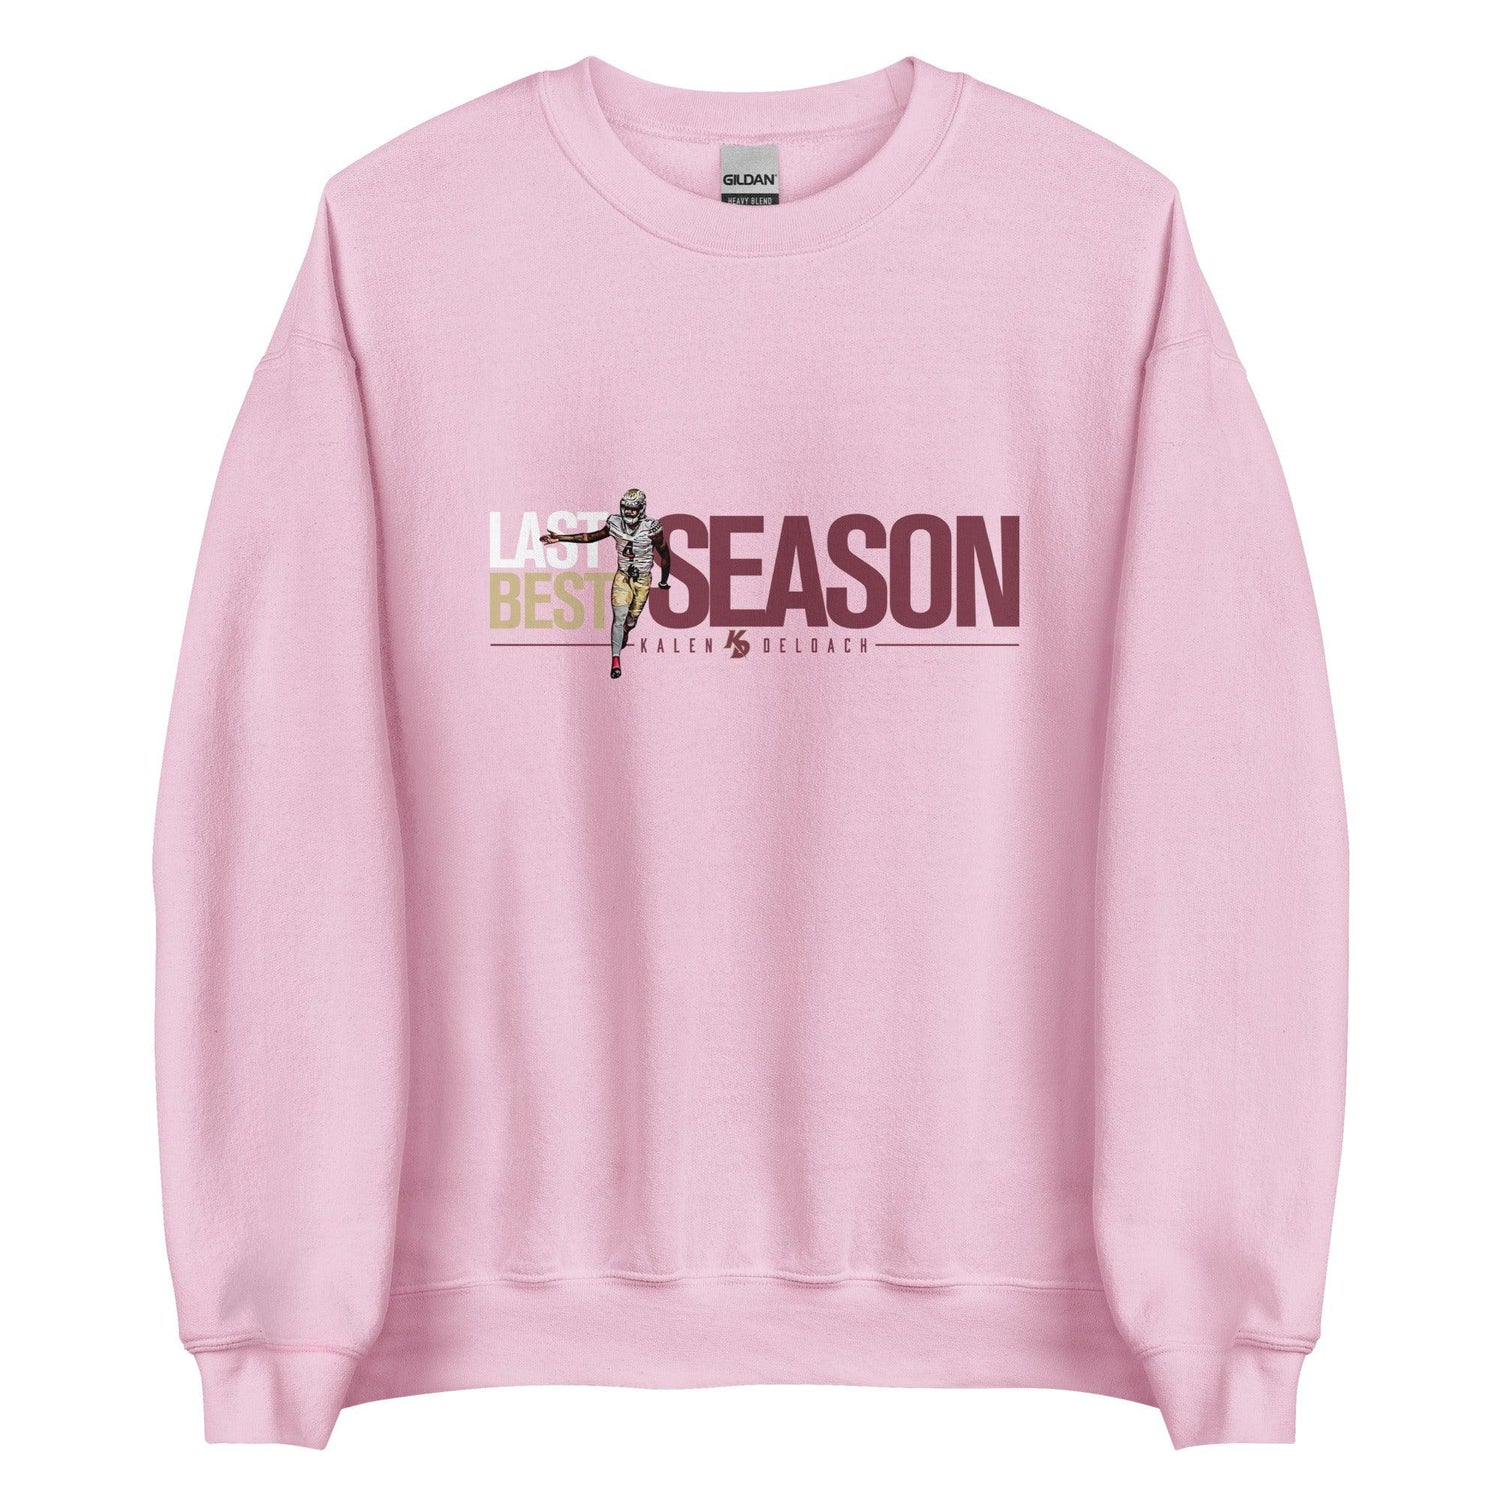 Kalen Deloach "Last Season Best Season" Sweatshirt - Fan Arch